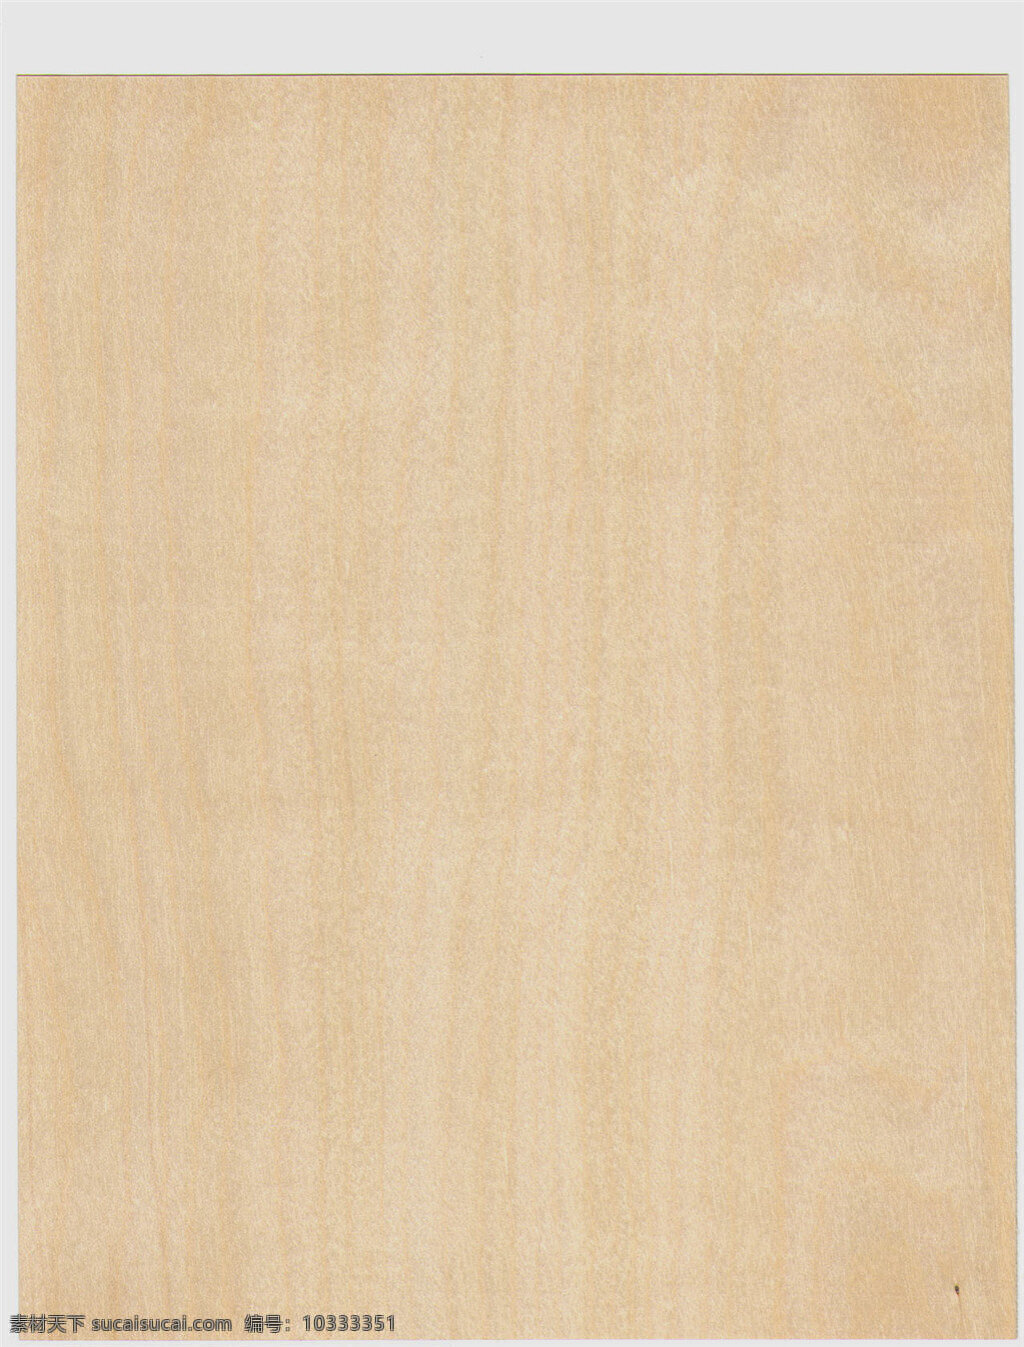 浅色 木纹 贴图 背景 木板 背景素材 材质贴图 高清木纹 木地板 室内设计 木纹纹理 木质纹理